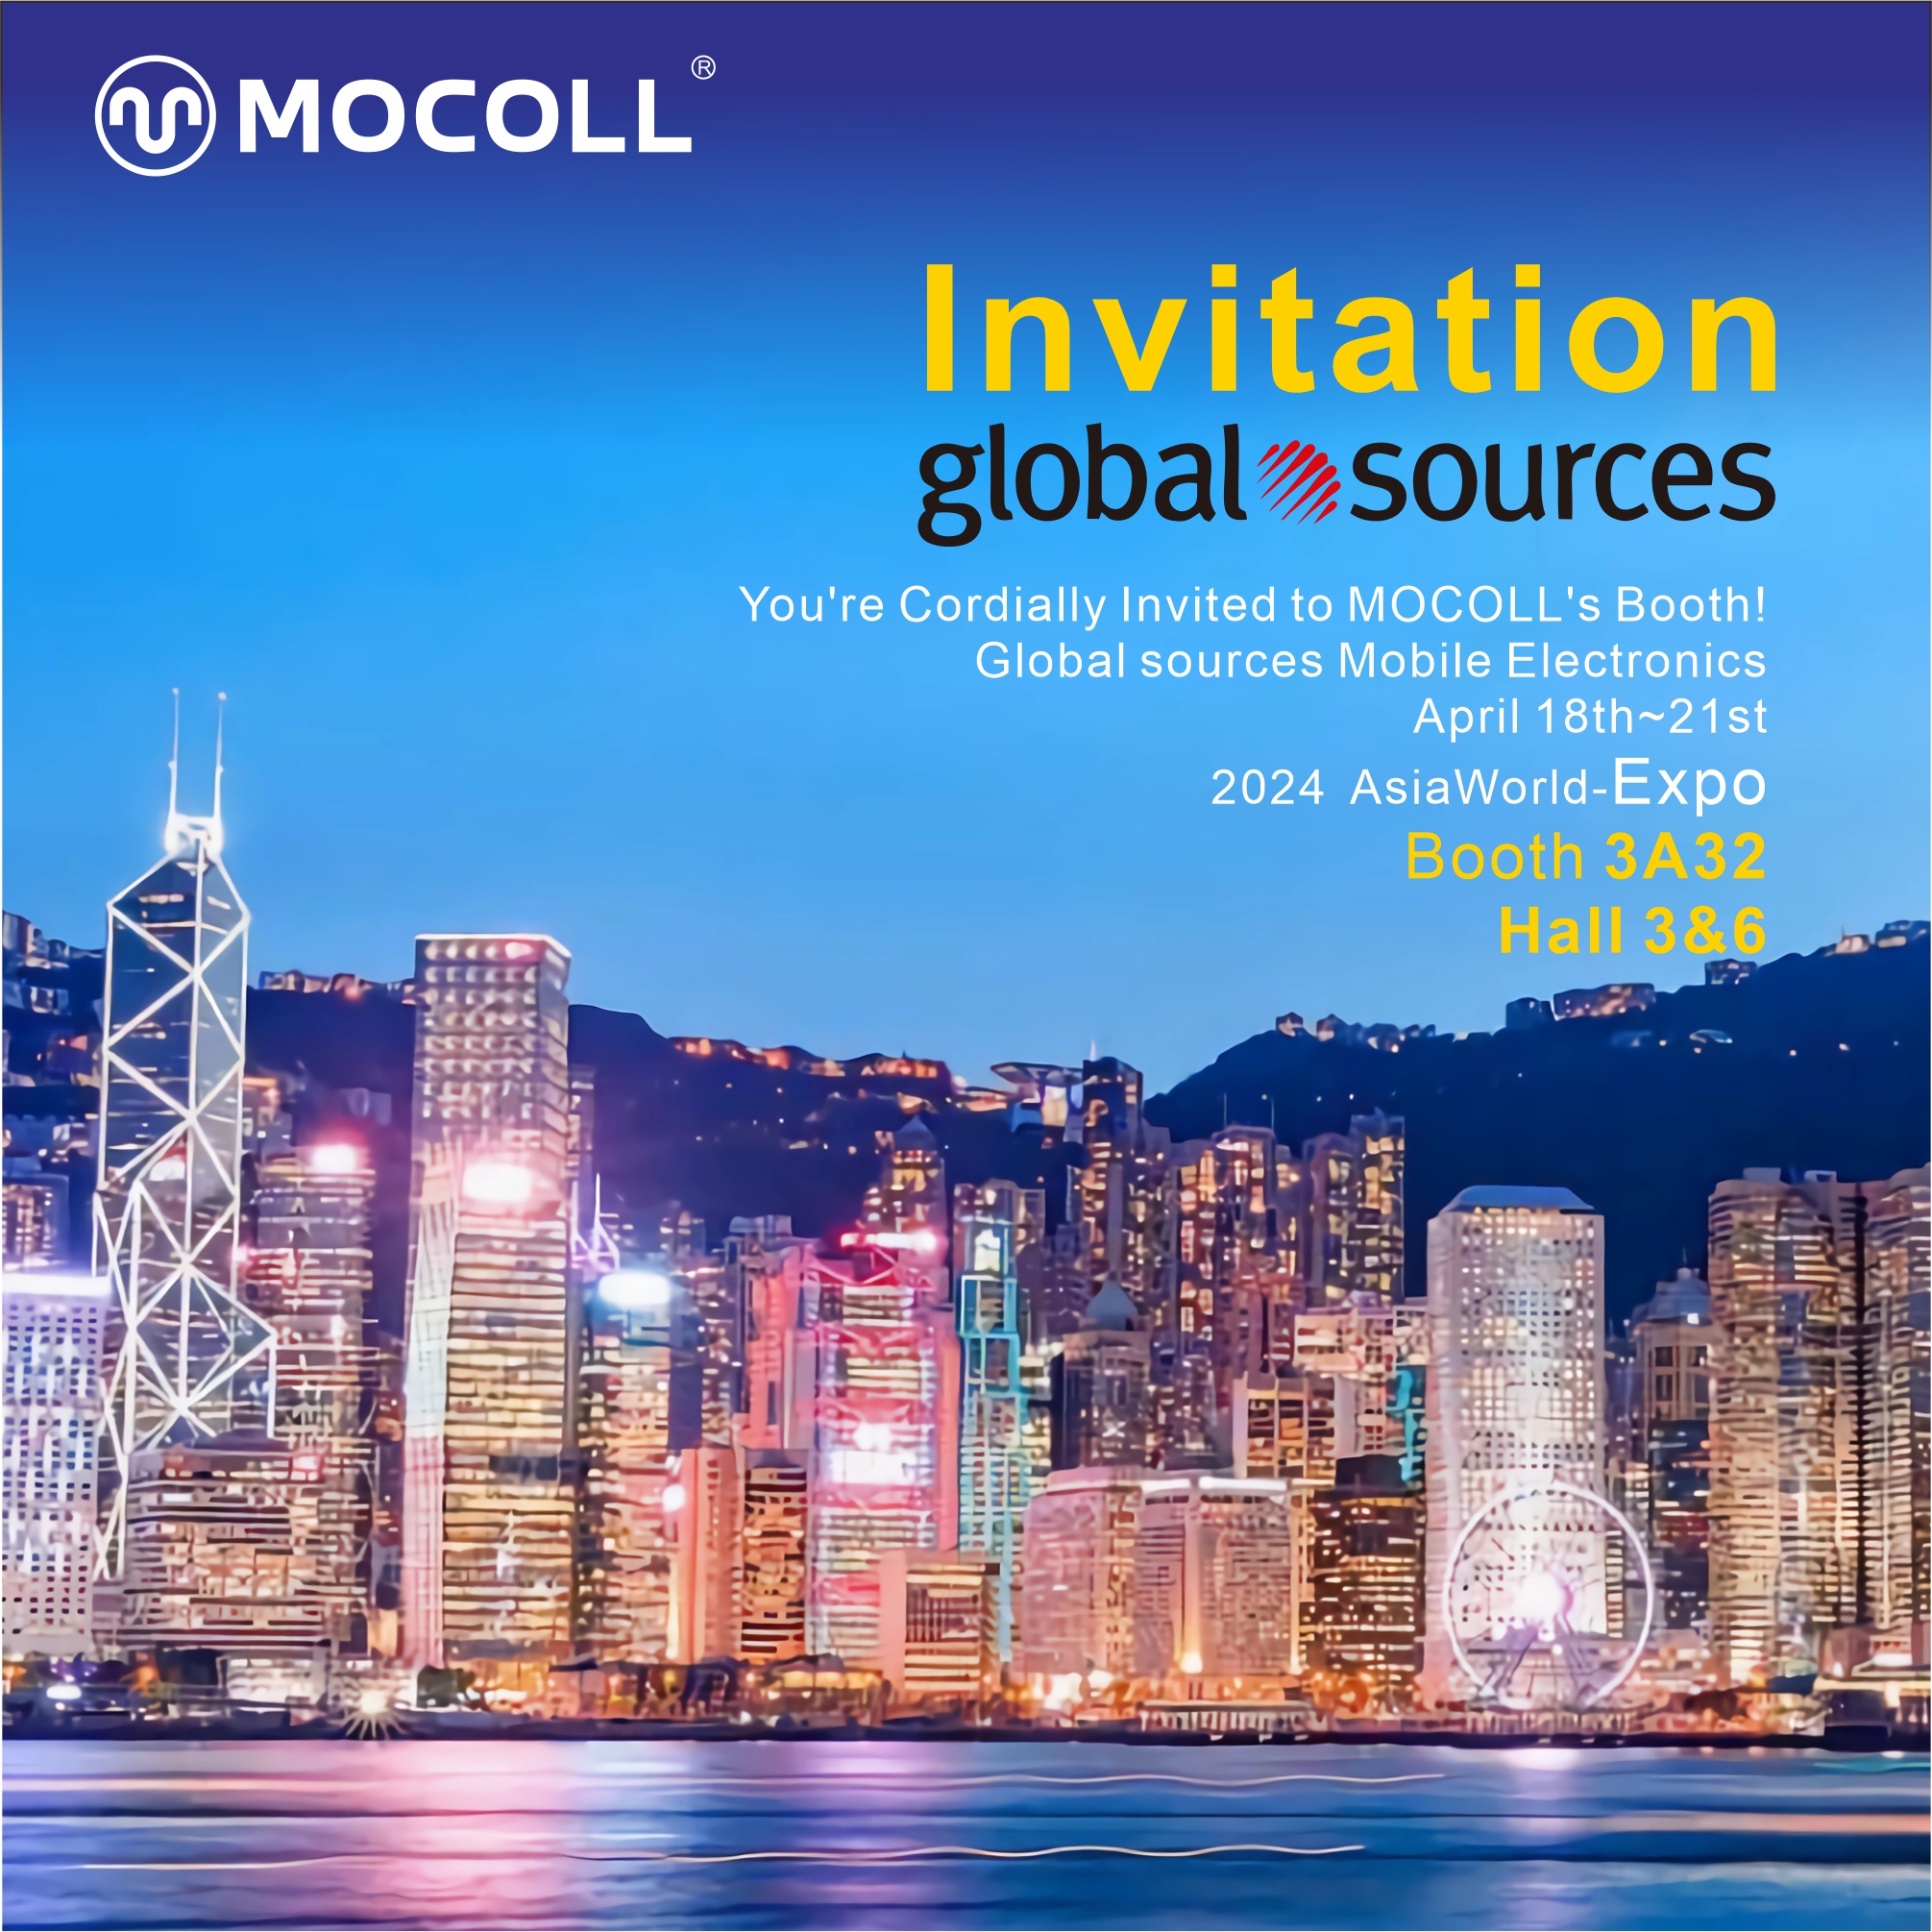 UM DIE ECKE | Eine Präsentation innovativer MOCOLL-Produkte bei Global Sources Mobile Electronics in Hongkong